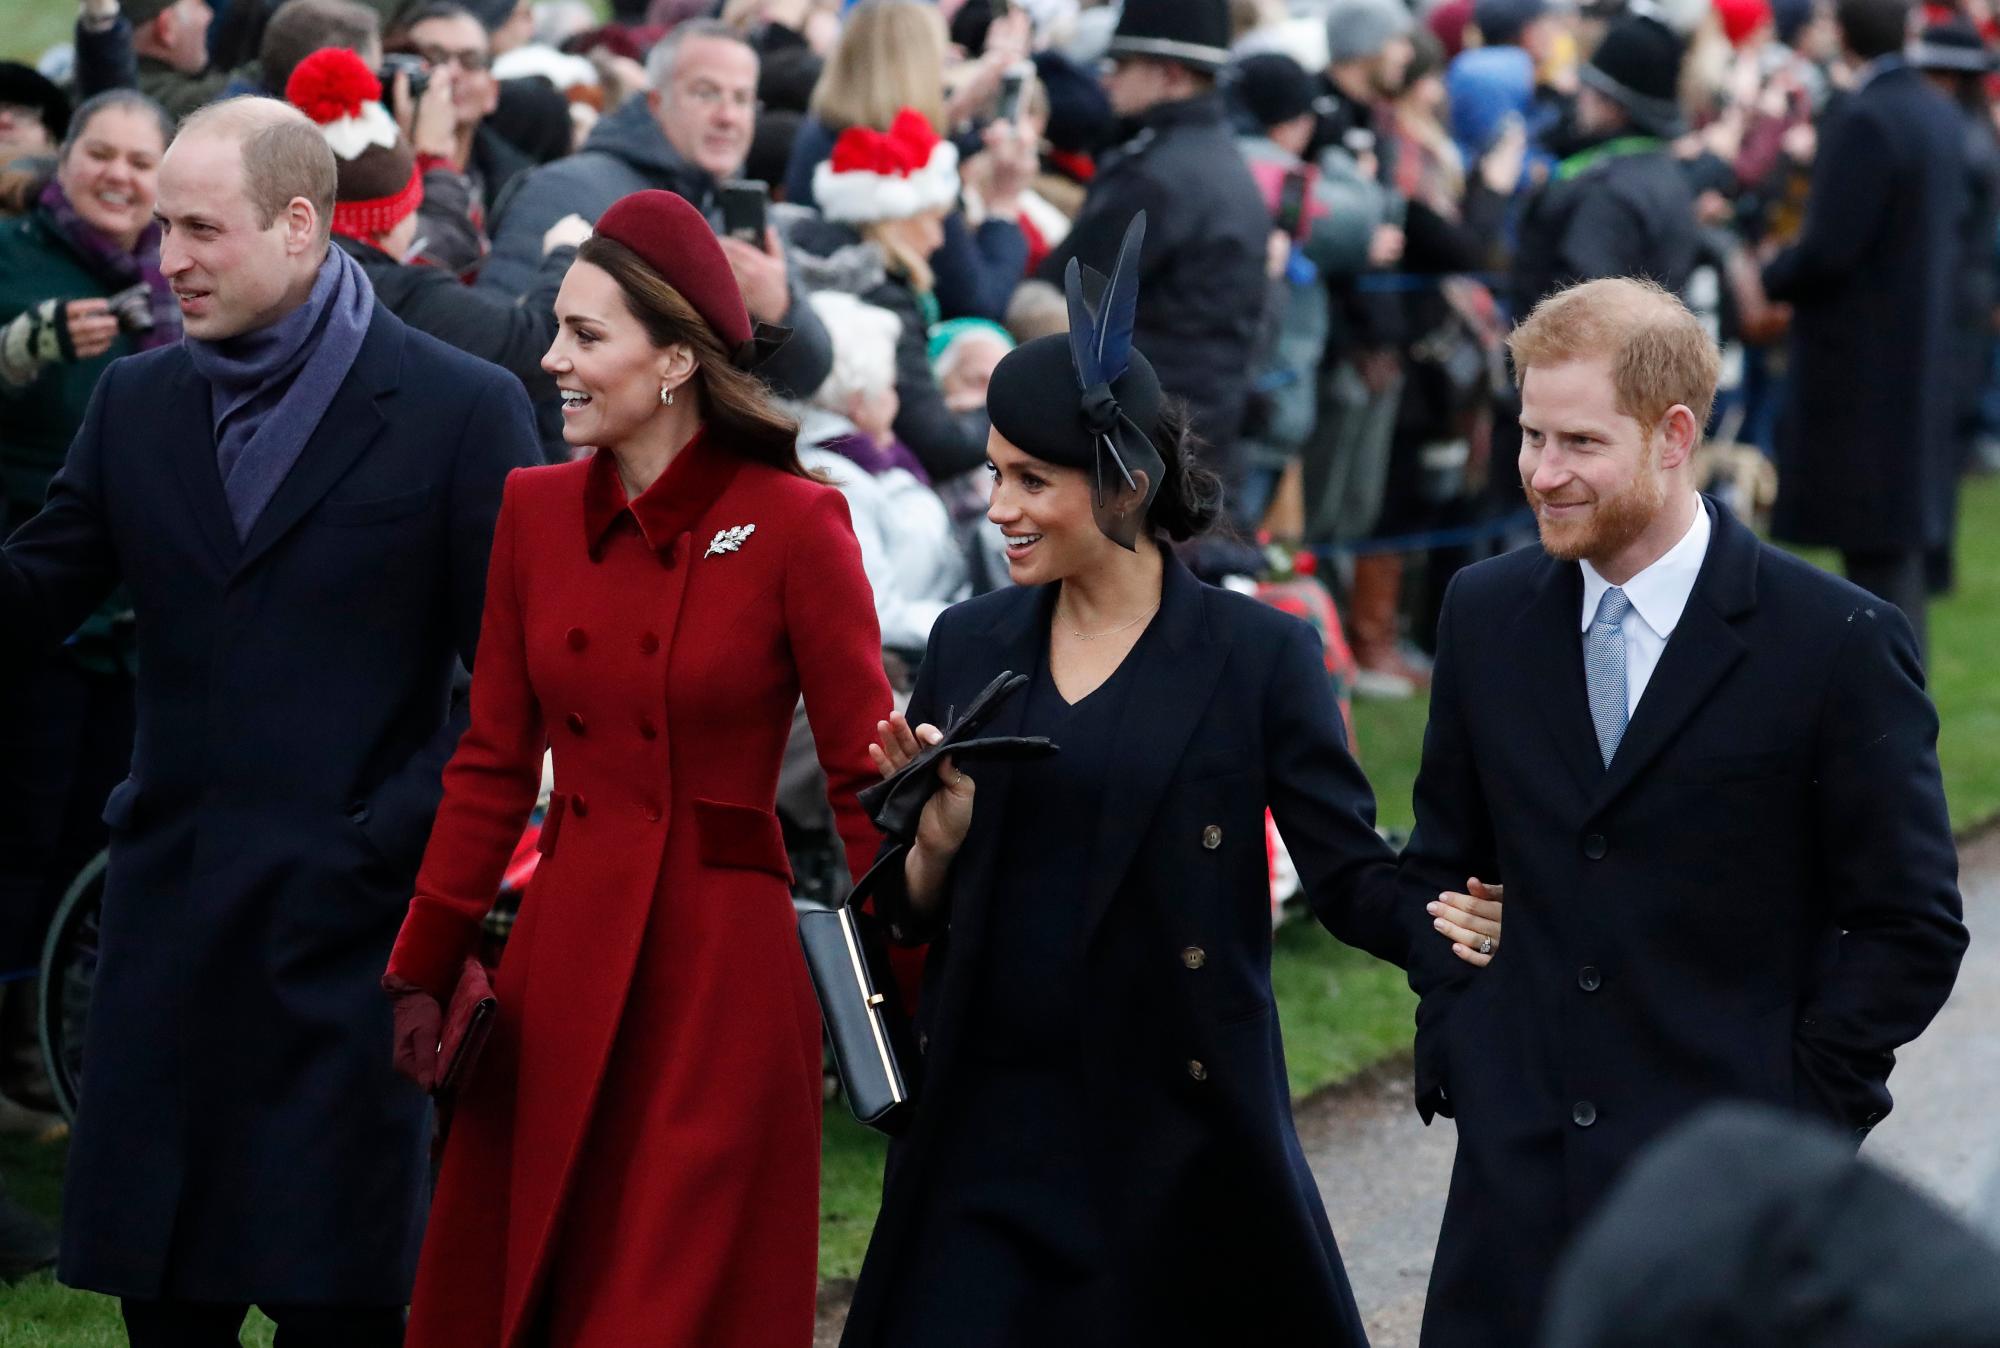 El príncipe William de Gran Bretaña, a la izquierda, Kate, la duquesa de Cambridge, la segunda izquierda, la duquesa Meghan de Sussex y el príncipe Harry, a la derecha, llegan para asistir al servicio de Navidad en la iglesia de Santa María Magdalena en Sandringham en Norfolk, Inglaterra.